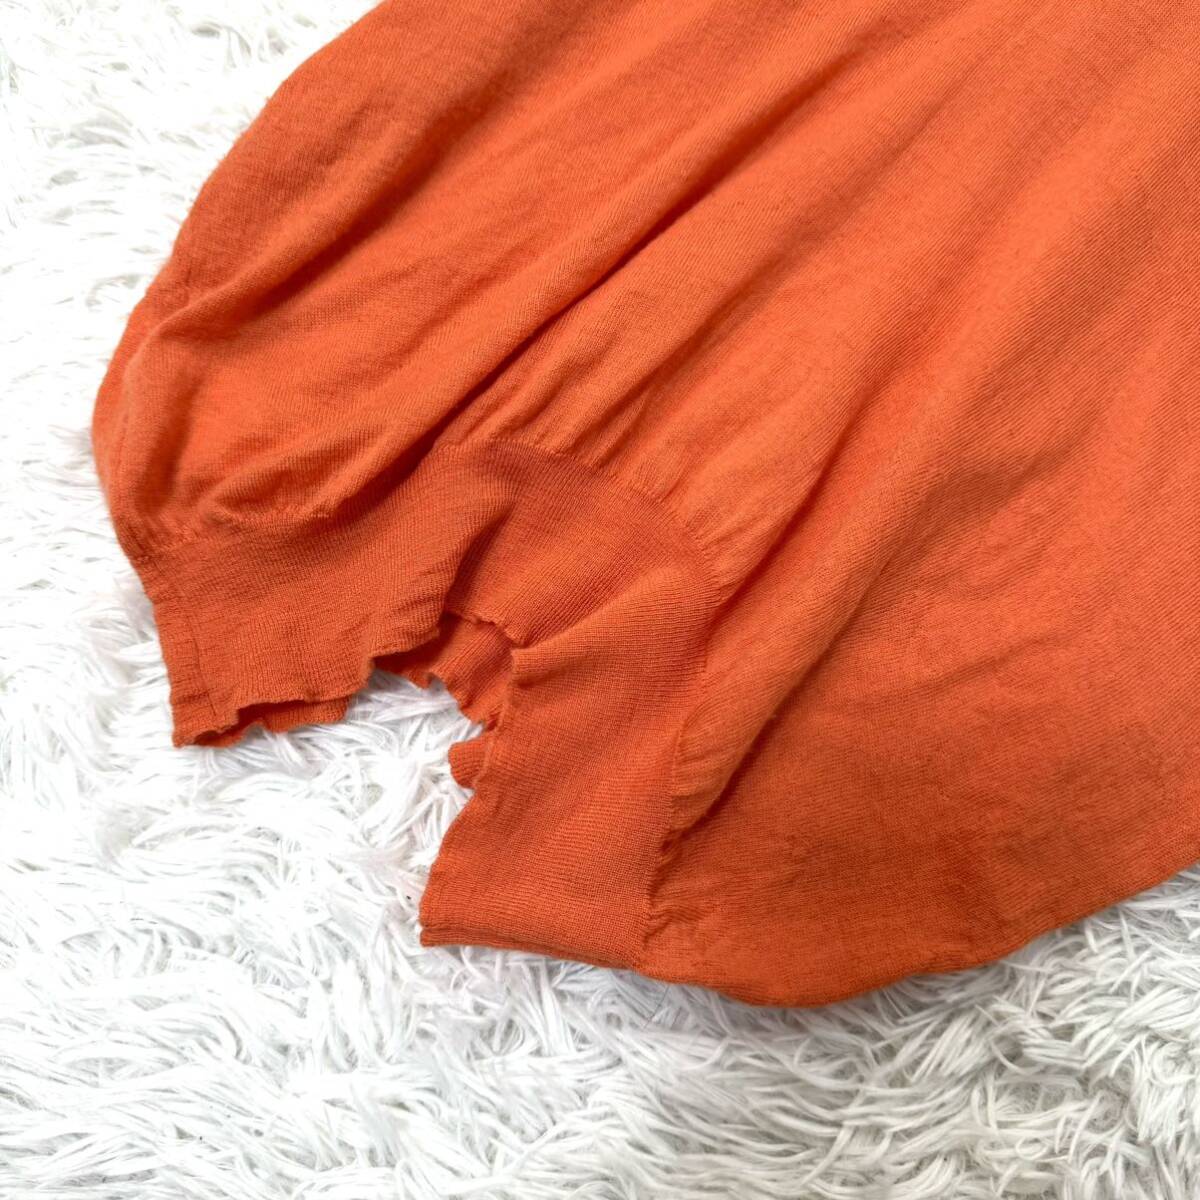  Prada PRADA wool short sleeves knitted T-shirt sweater orange L size 